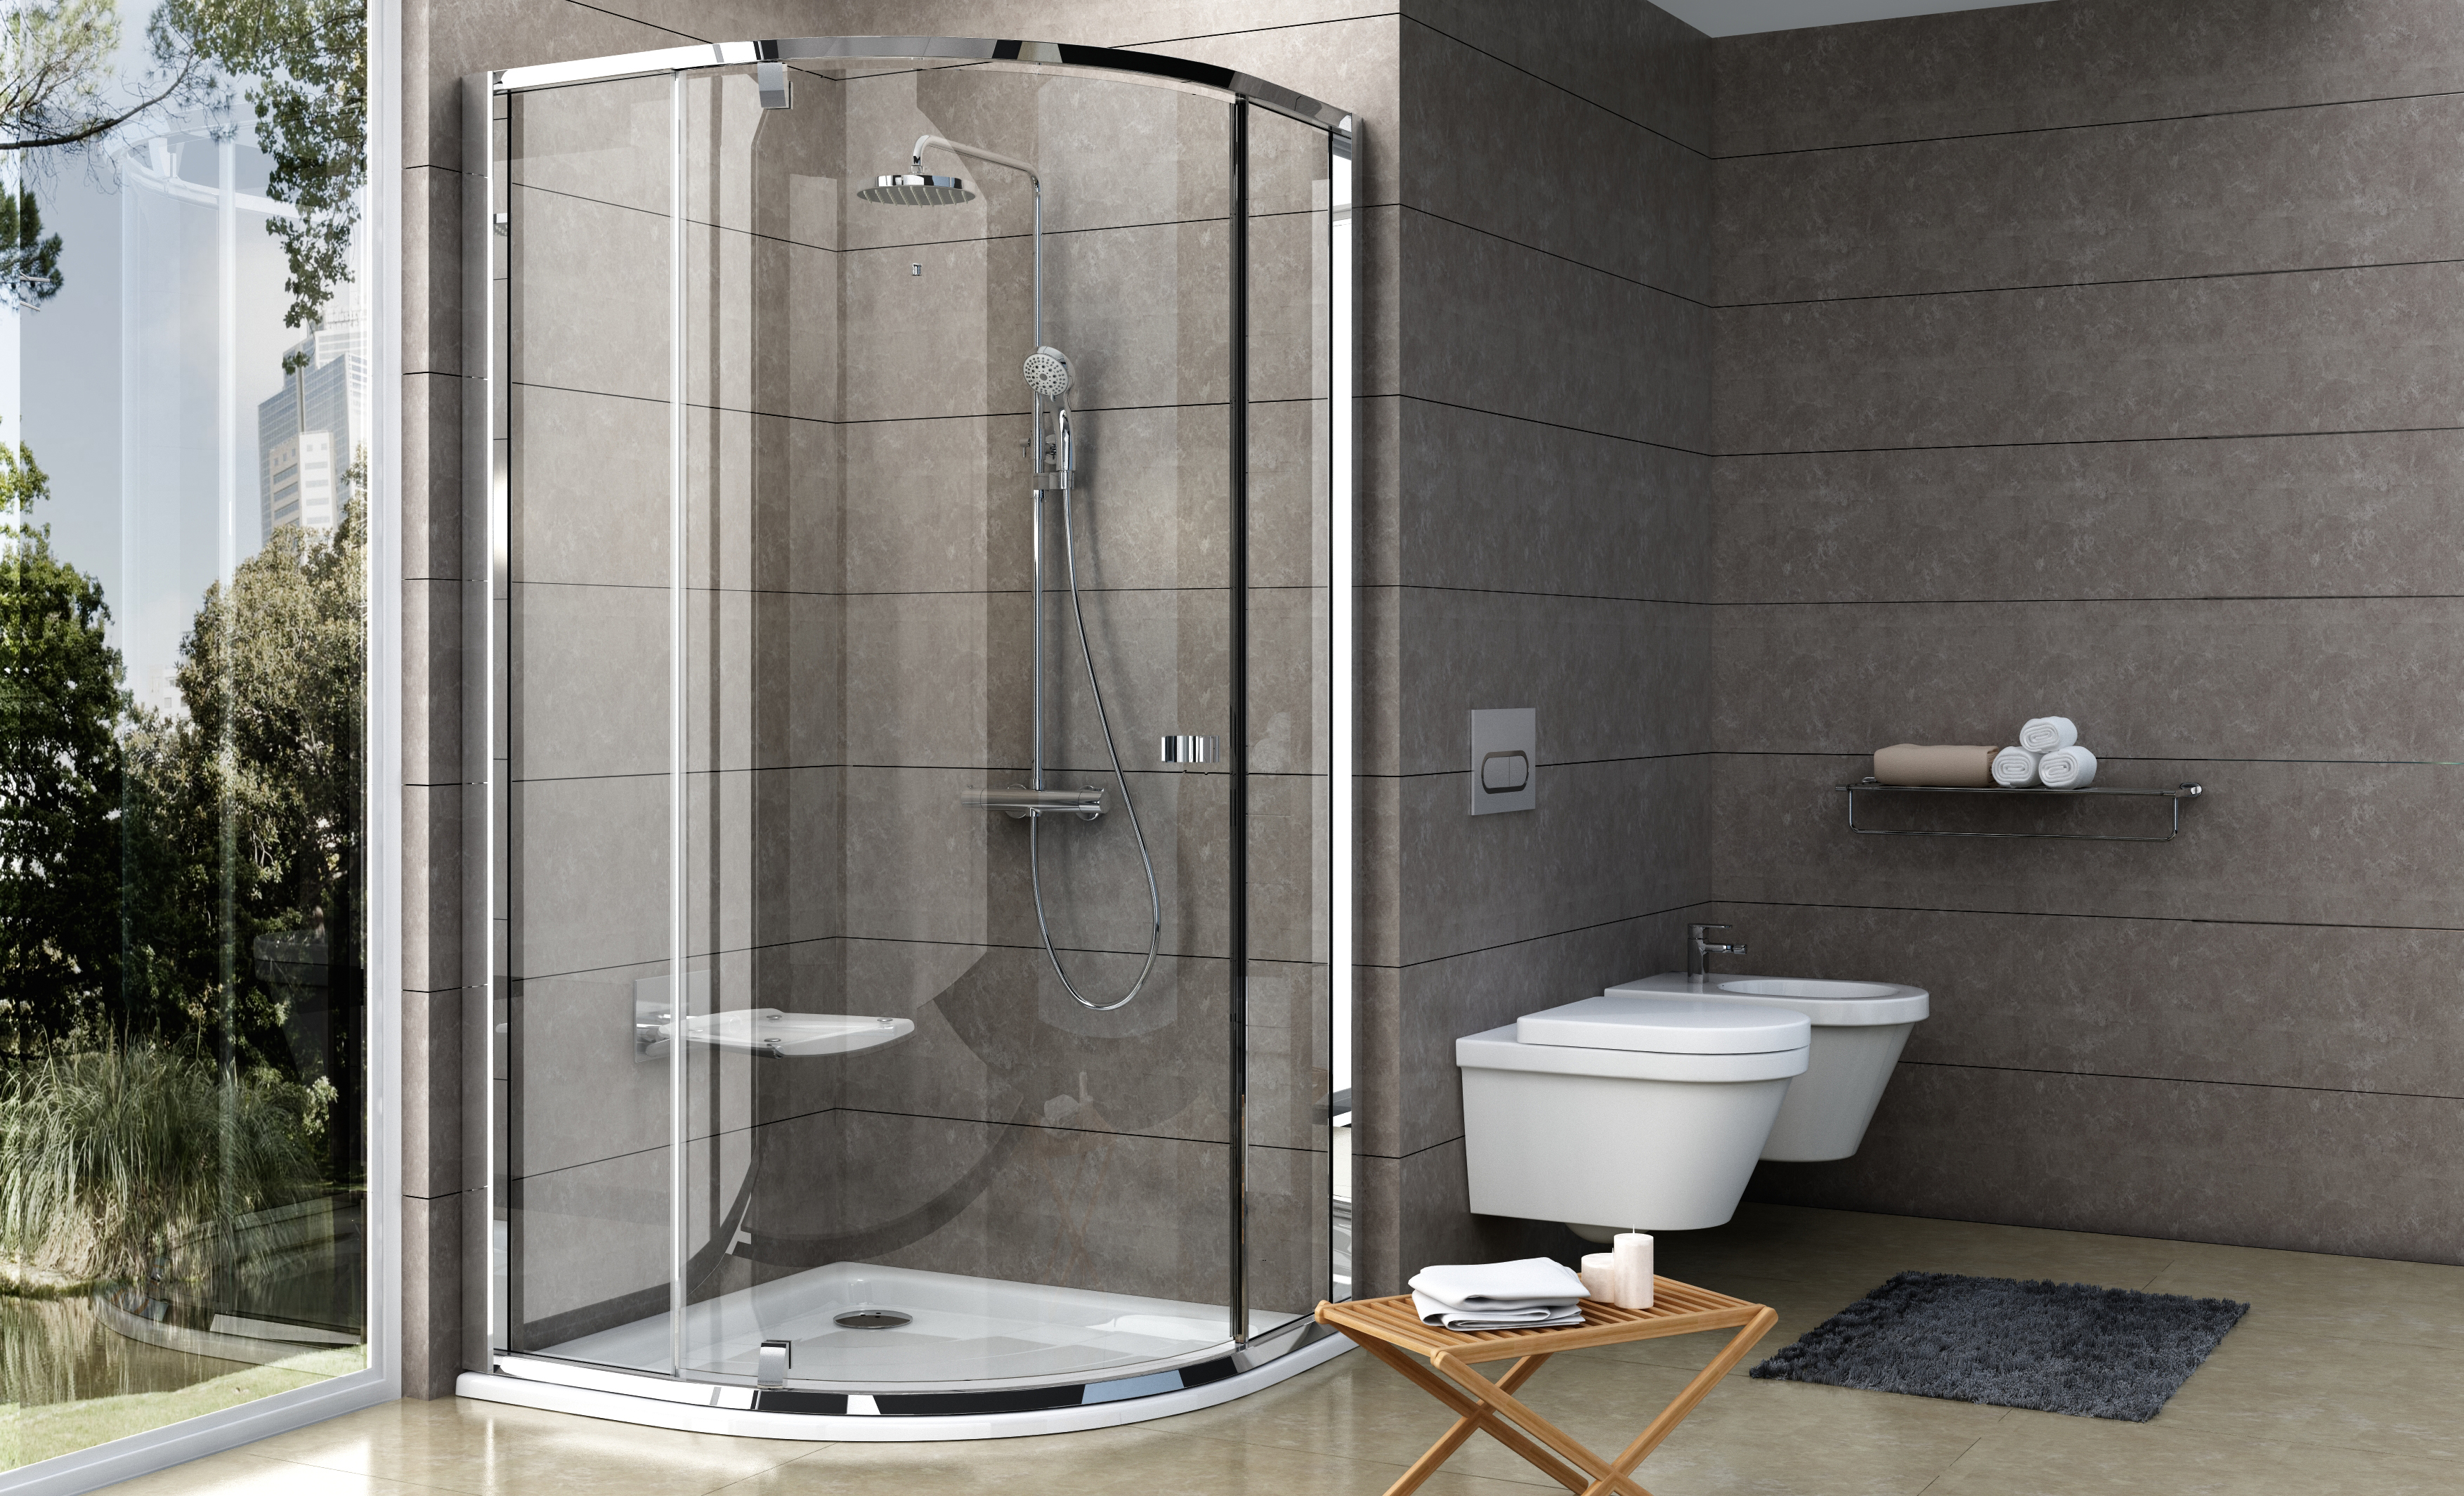 Egy negyedköríves zuhanyzó kialakítása igazán helytakarékos megoldás a fürdőszobában.